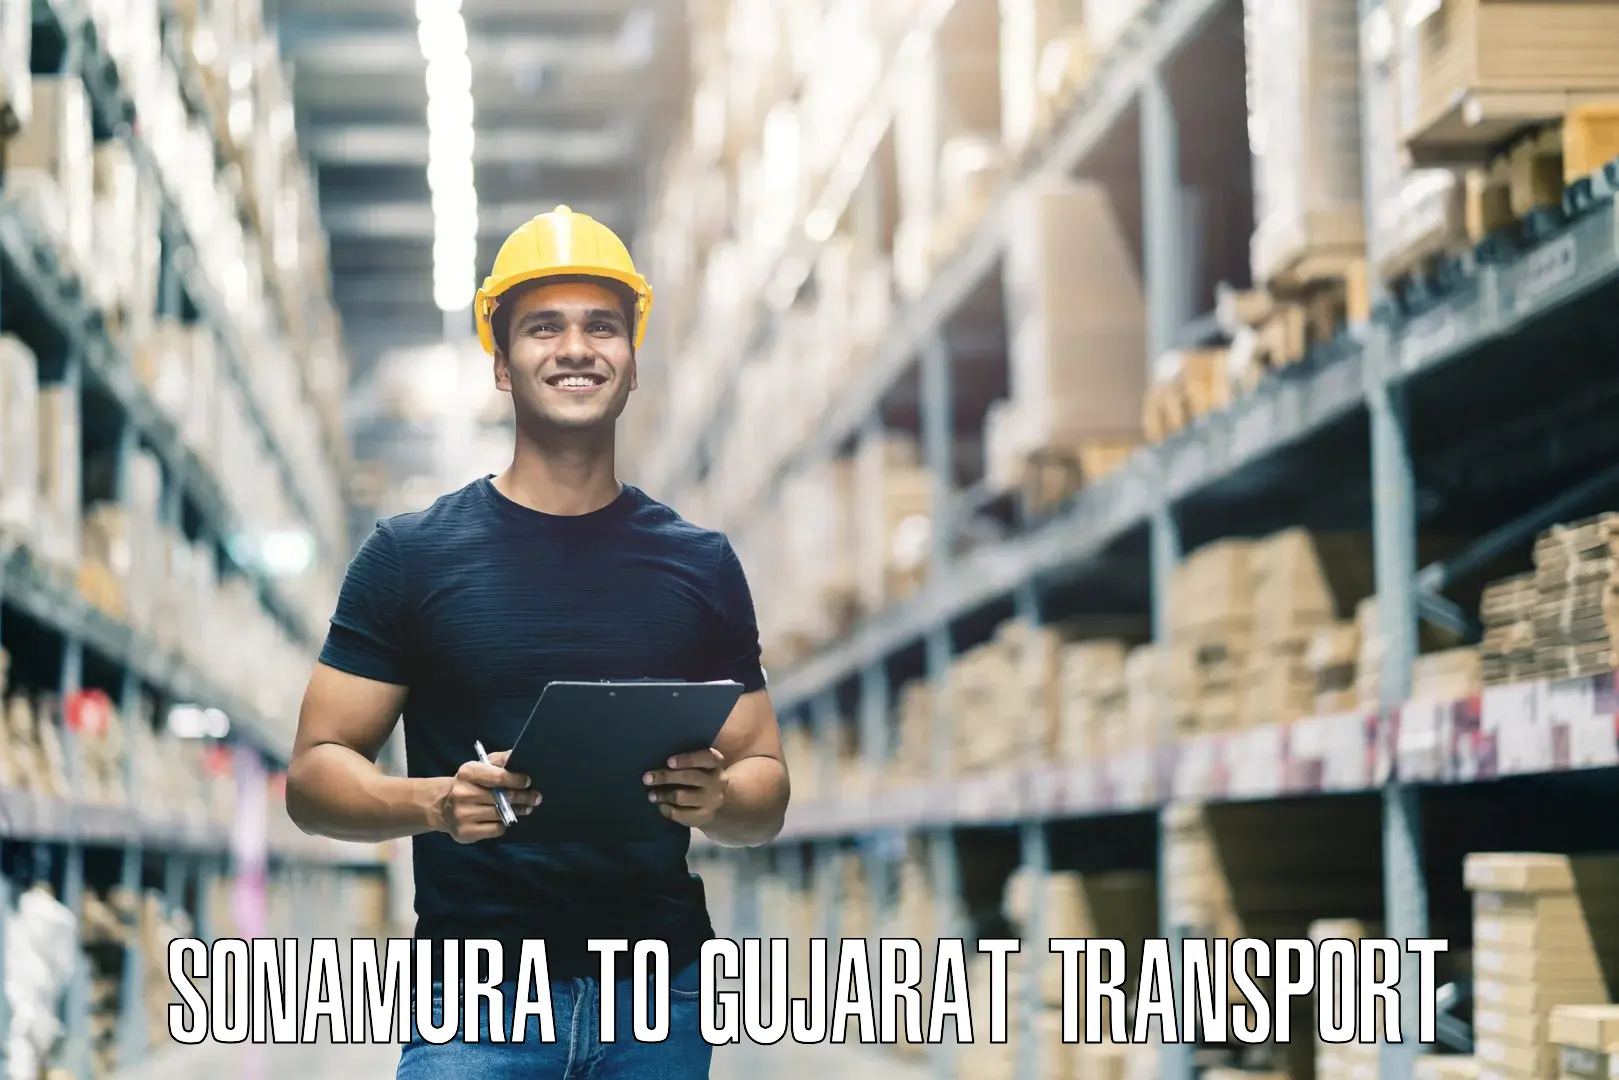 Furniture transport service Sonamura to Vadnagar